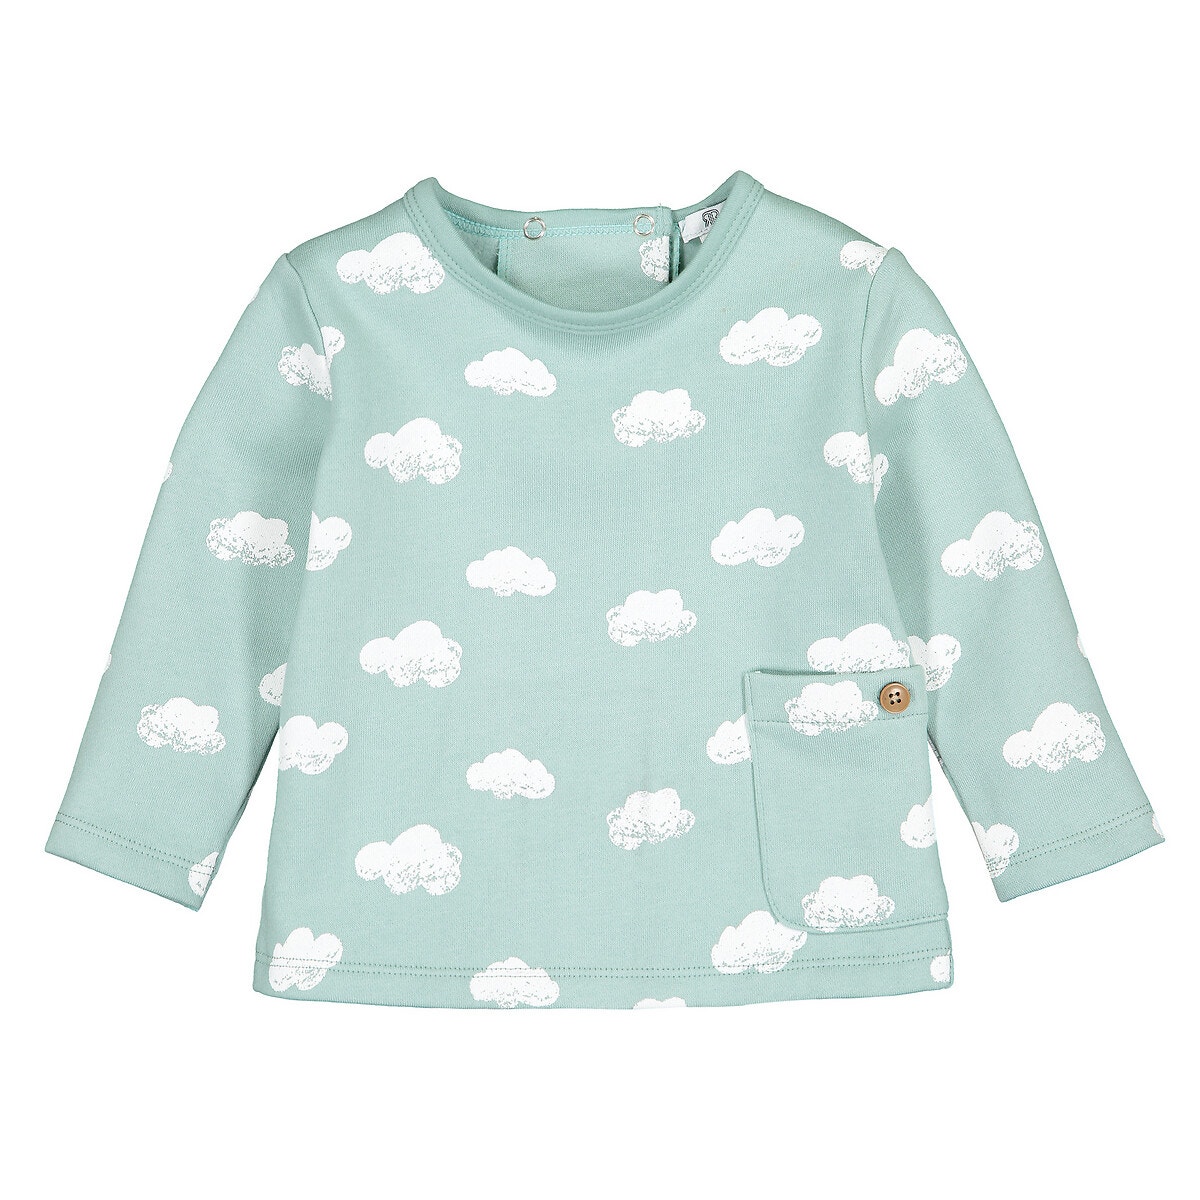 Φούτερ από φανέλα με μοτίβο σύννεφα, 0 - 2 ετών